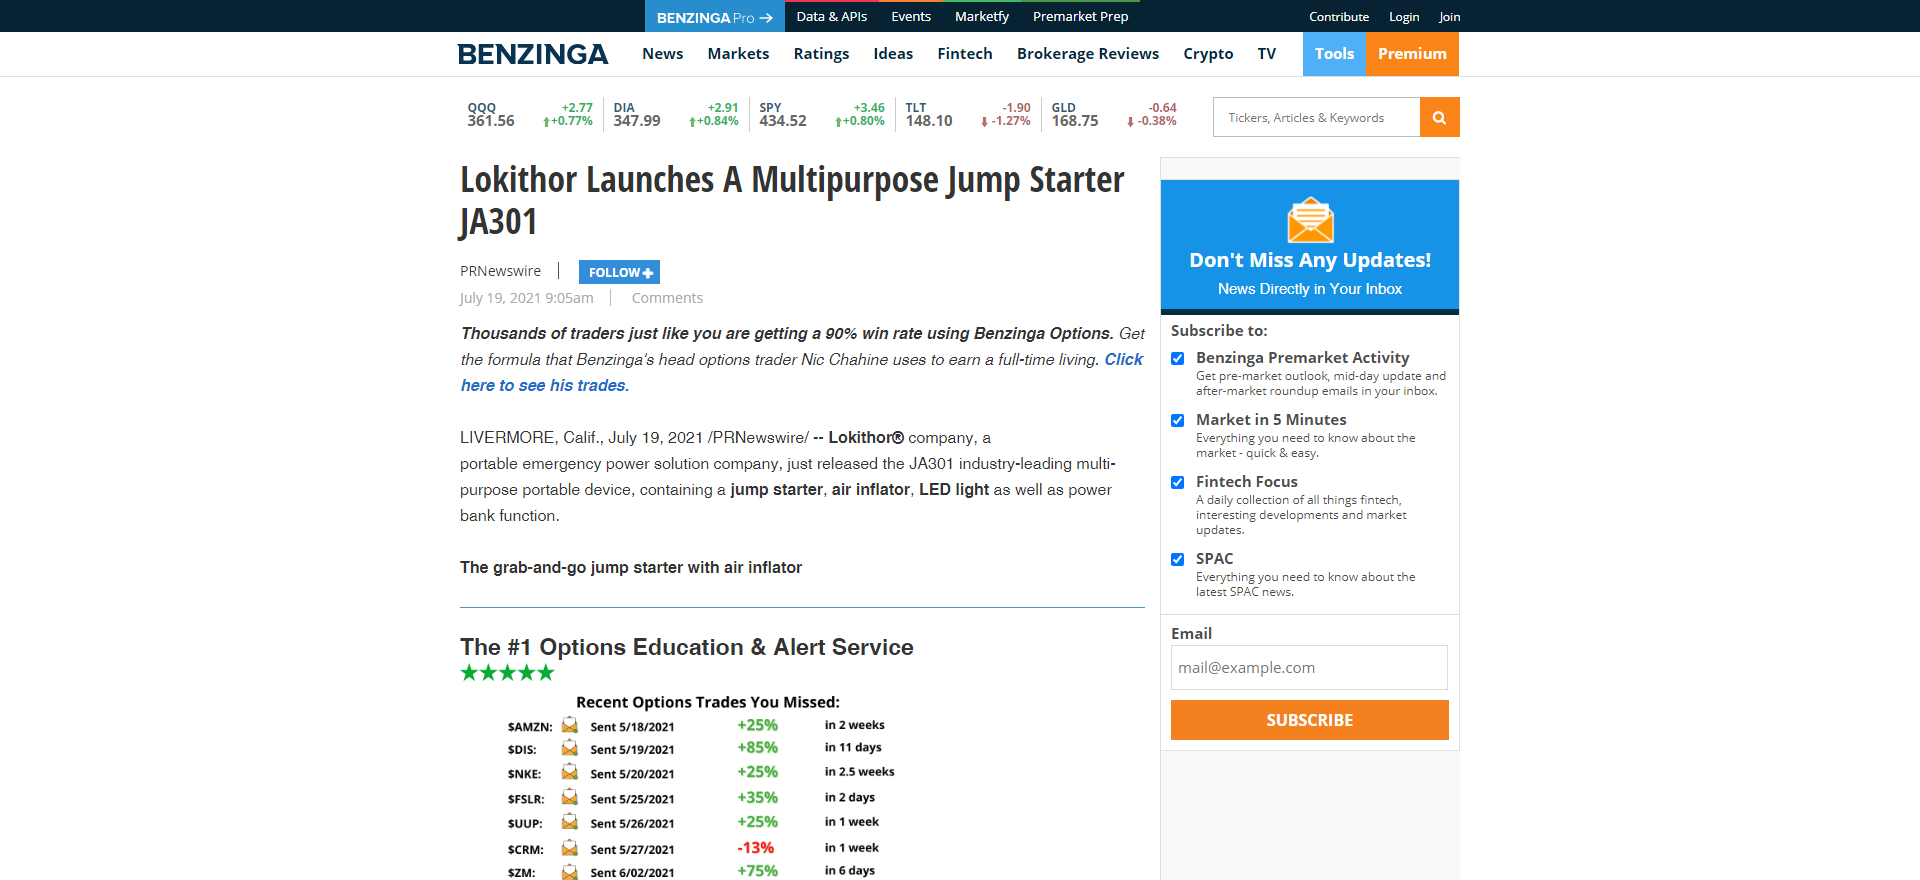 Lokithor Launches A Multipurpose Jump Starter JA301 - Benzinga_ - www.benzinga.com